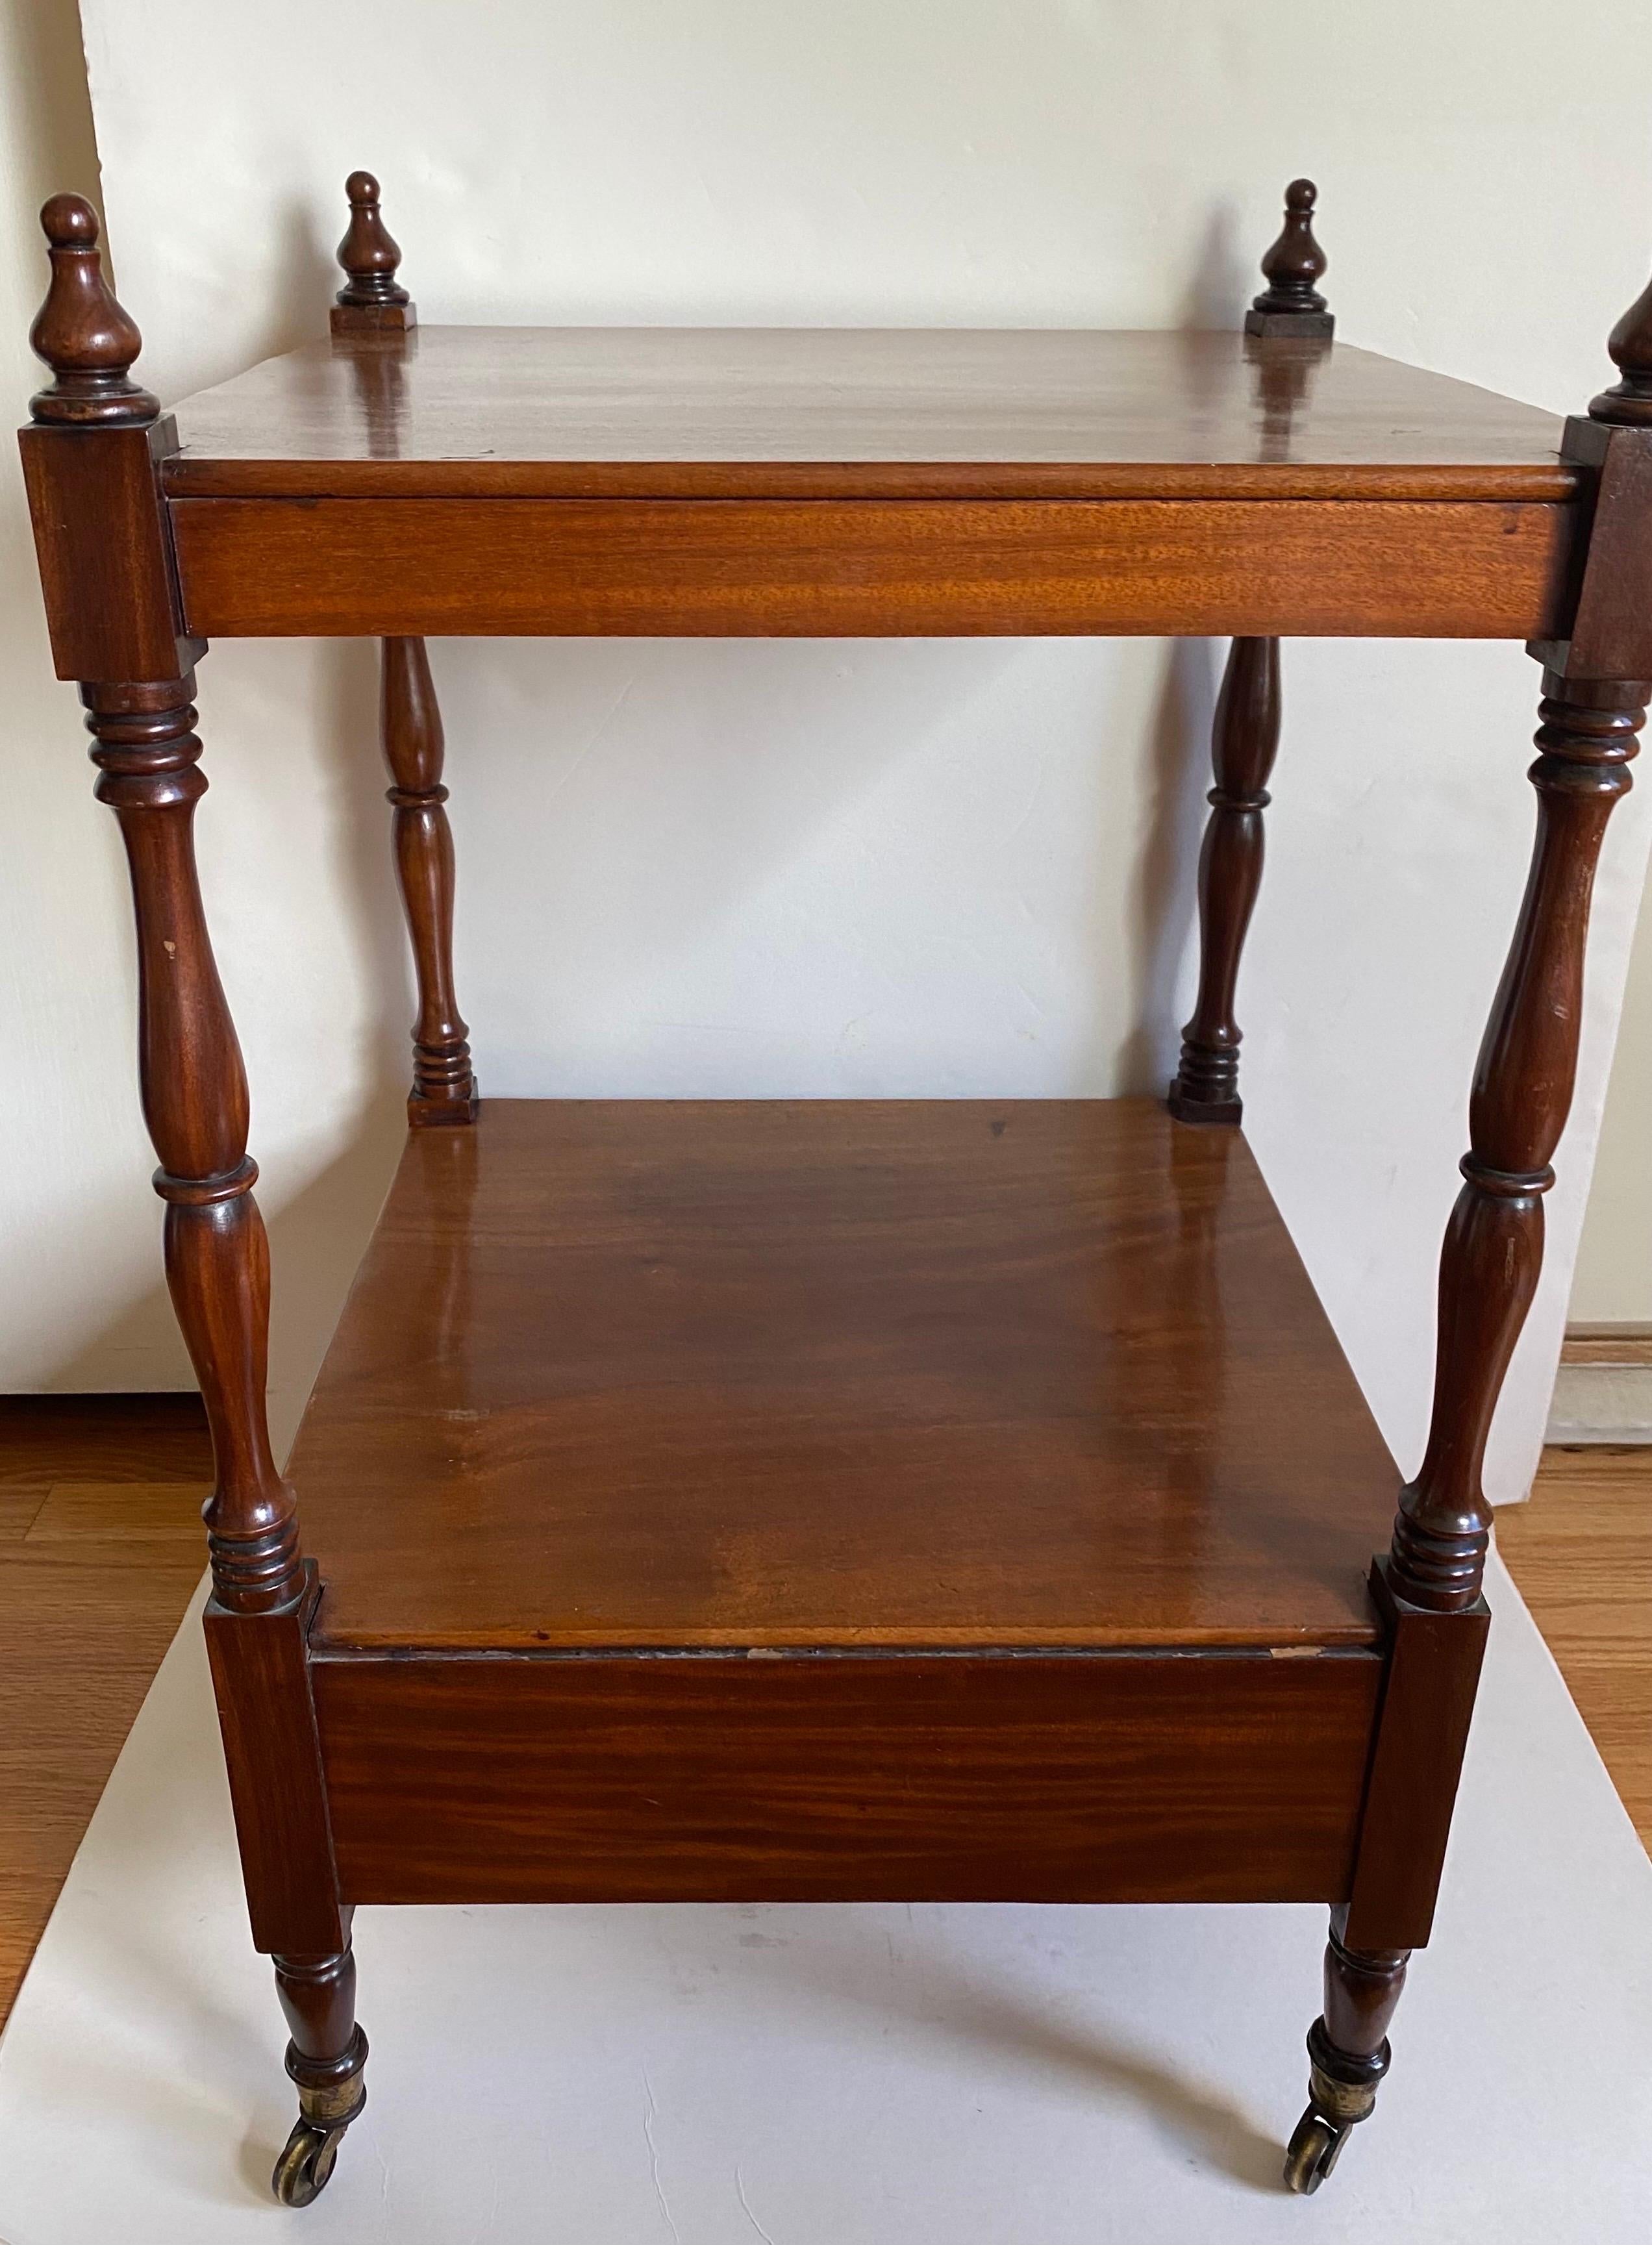 Antike englische Regency-Mahagoni-Etagere oder Trolley-Tisch mit quadratischer Platte, unterer Ablage, einer Schublade, fertiger Rückseite, gedrechselten Stützen und Beinen, die in Messingrollen enden.

Englisch, um 1820 / 1830.

Provenienz: